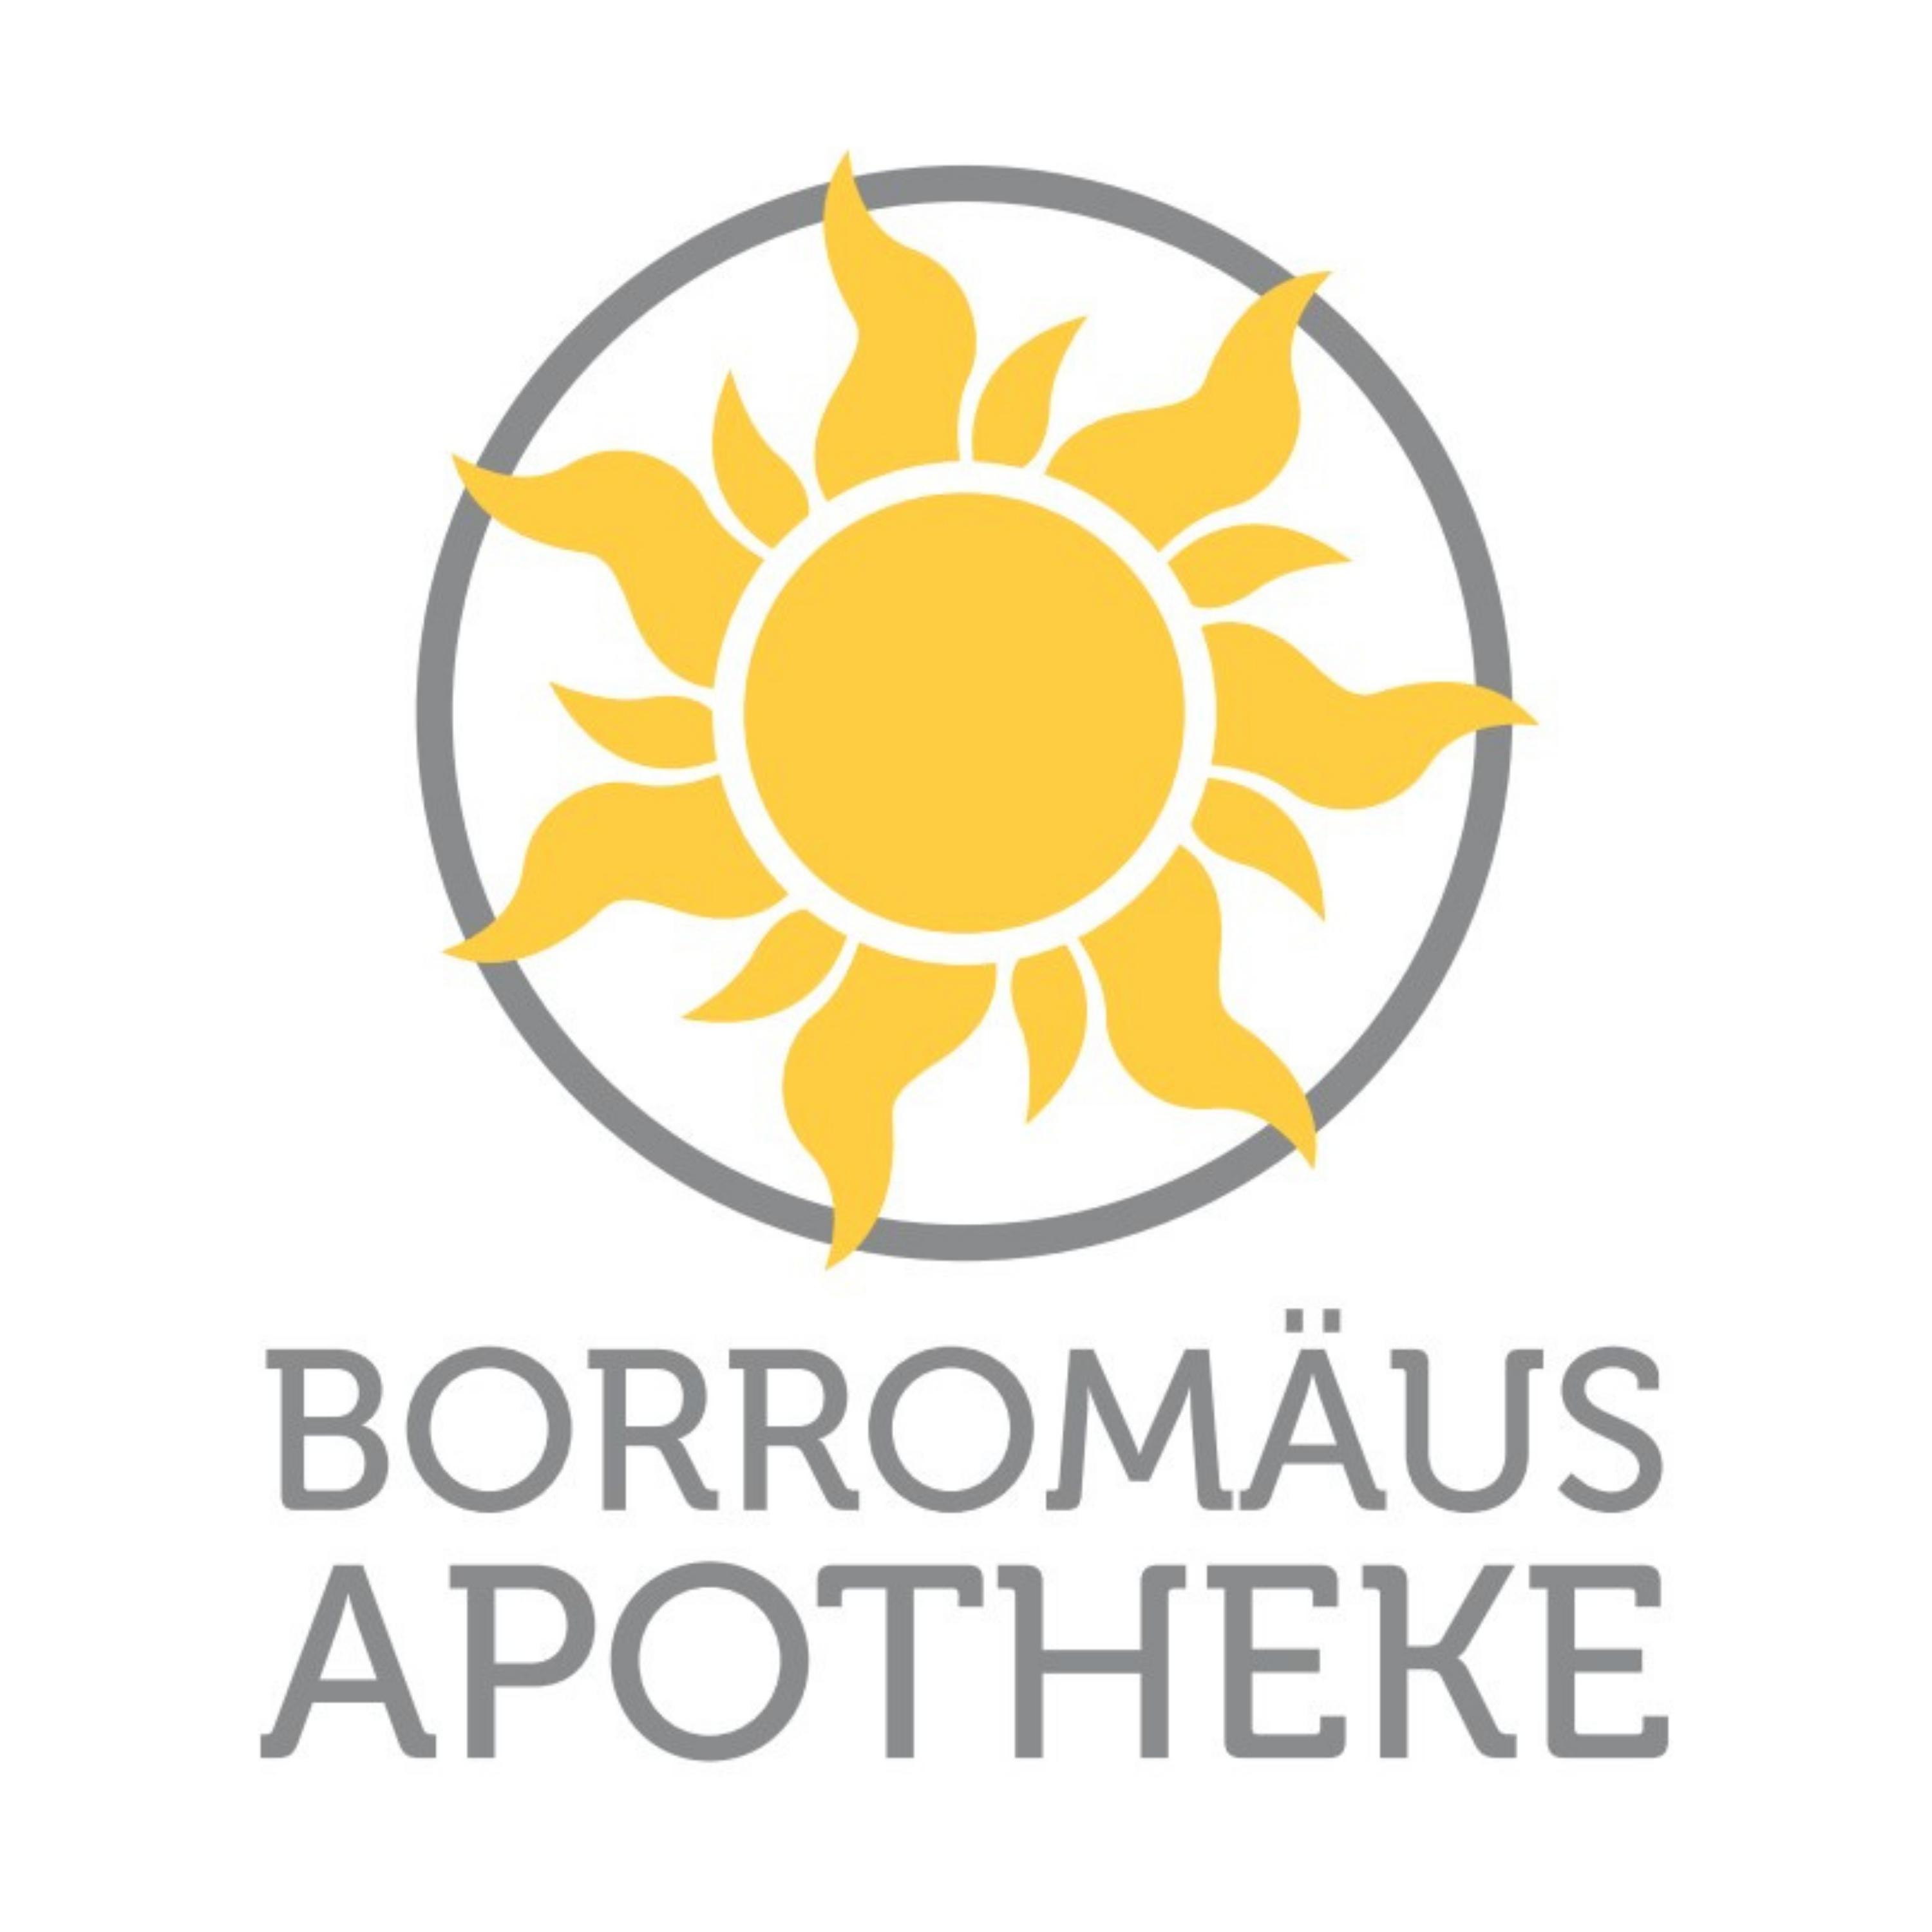 NaturApo - Deine Online Apotheke aus Österreich Logo